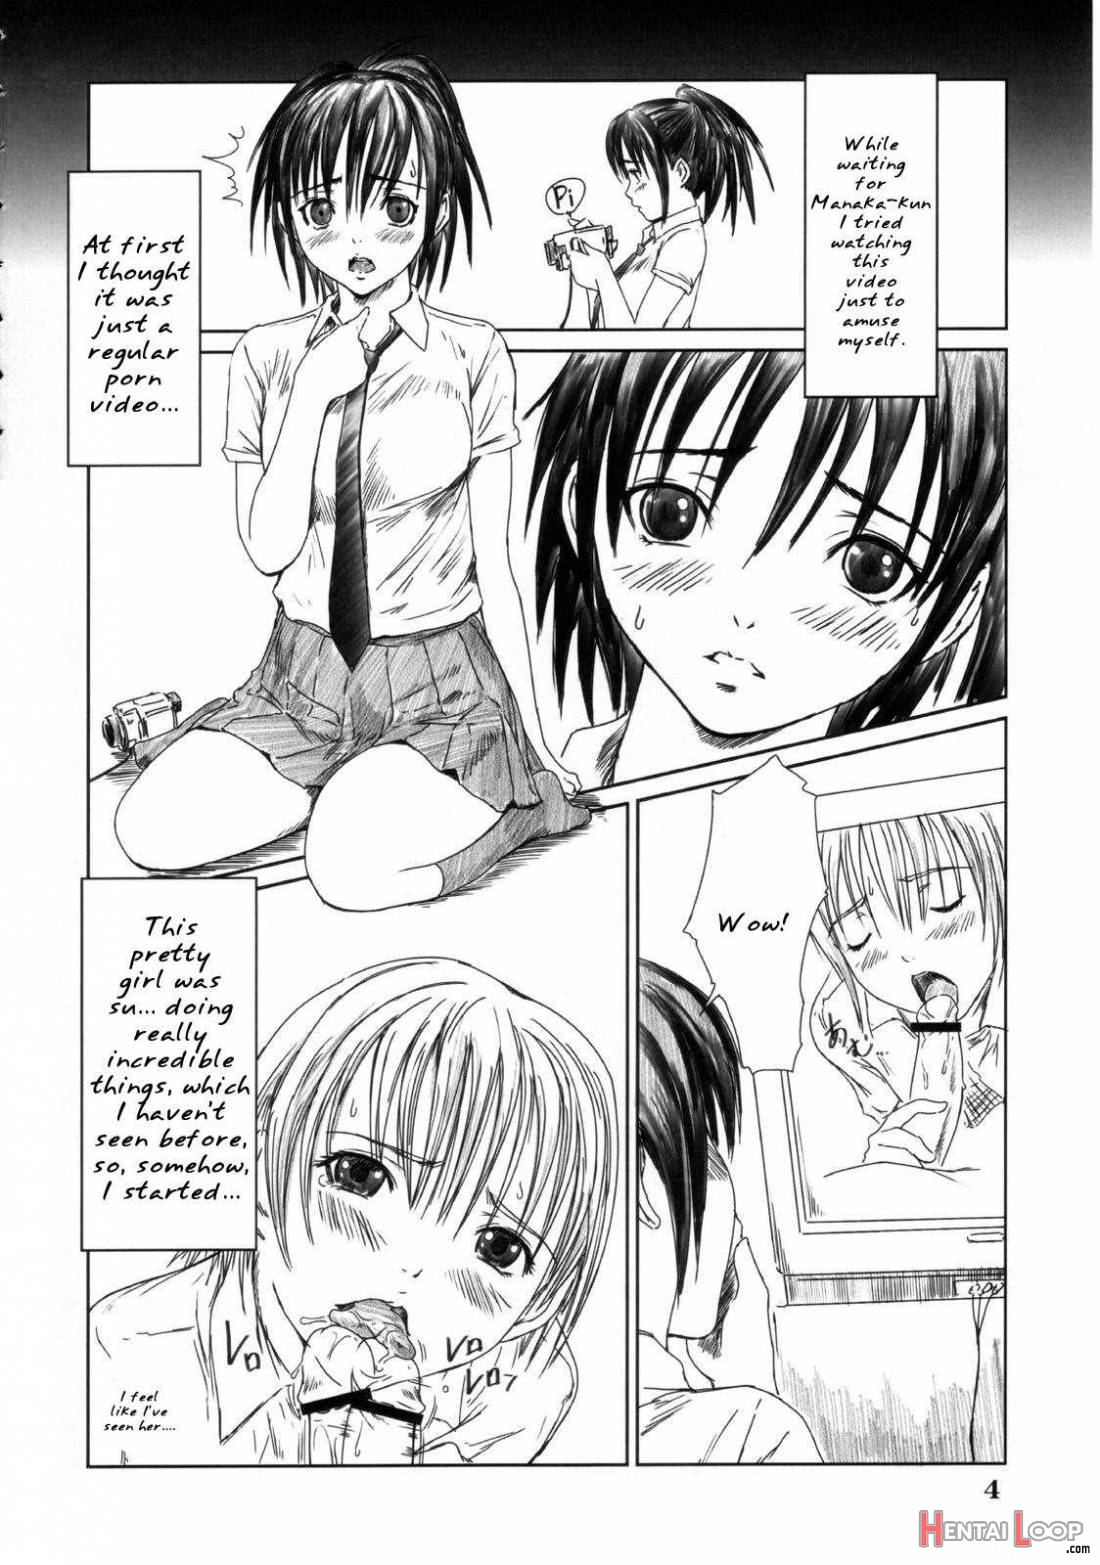 Kozue Panic page 3